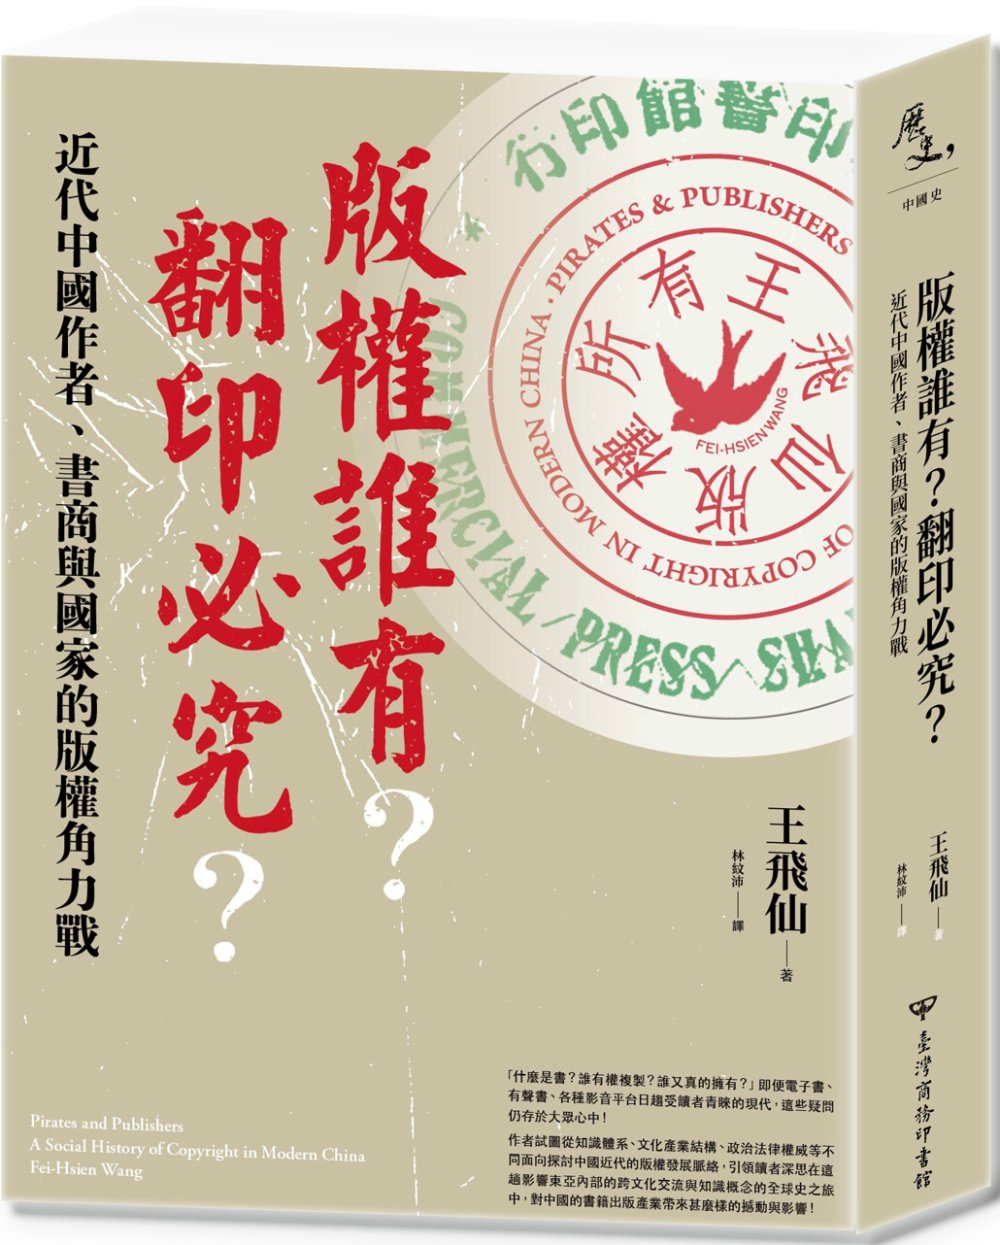 版權誰有?翻印必究?：近代中國作者、書商與國家的版權角力戰